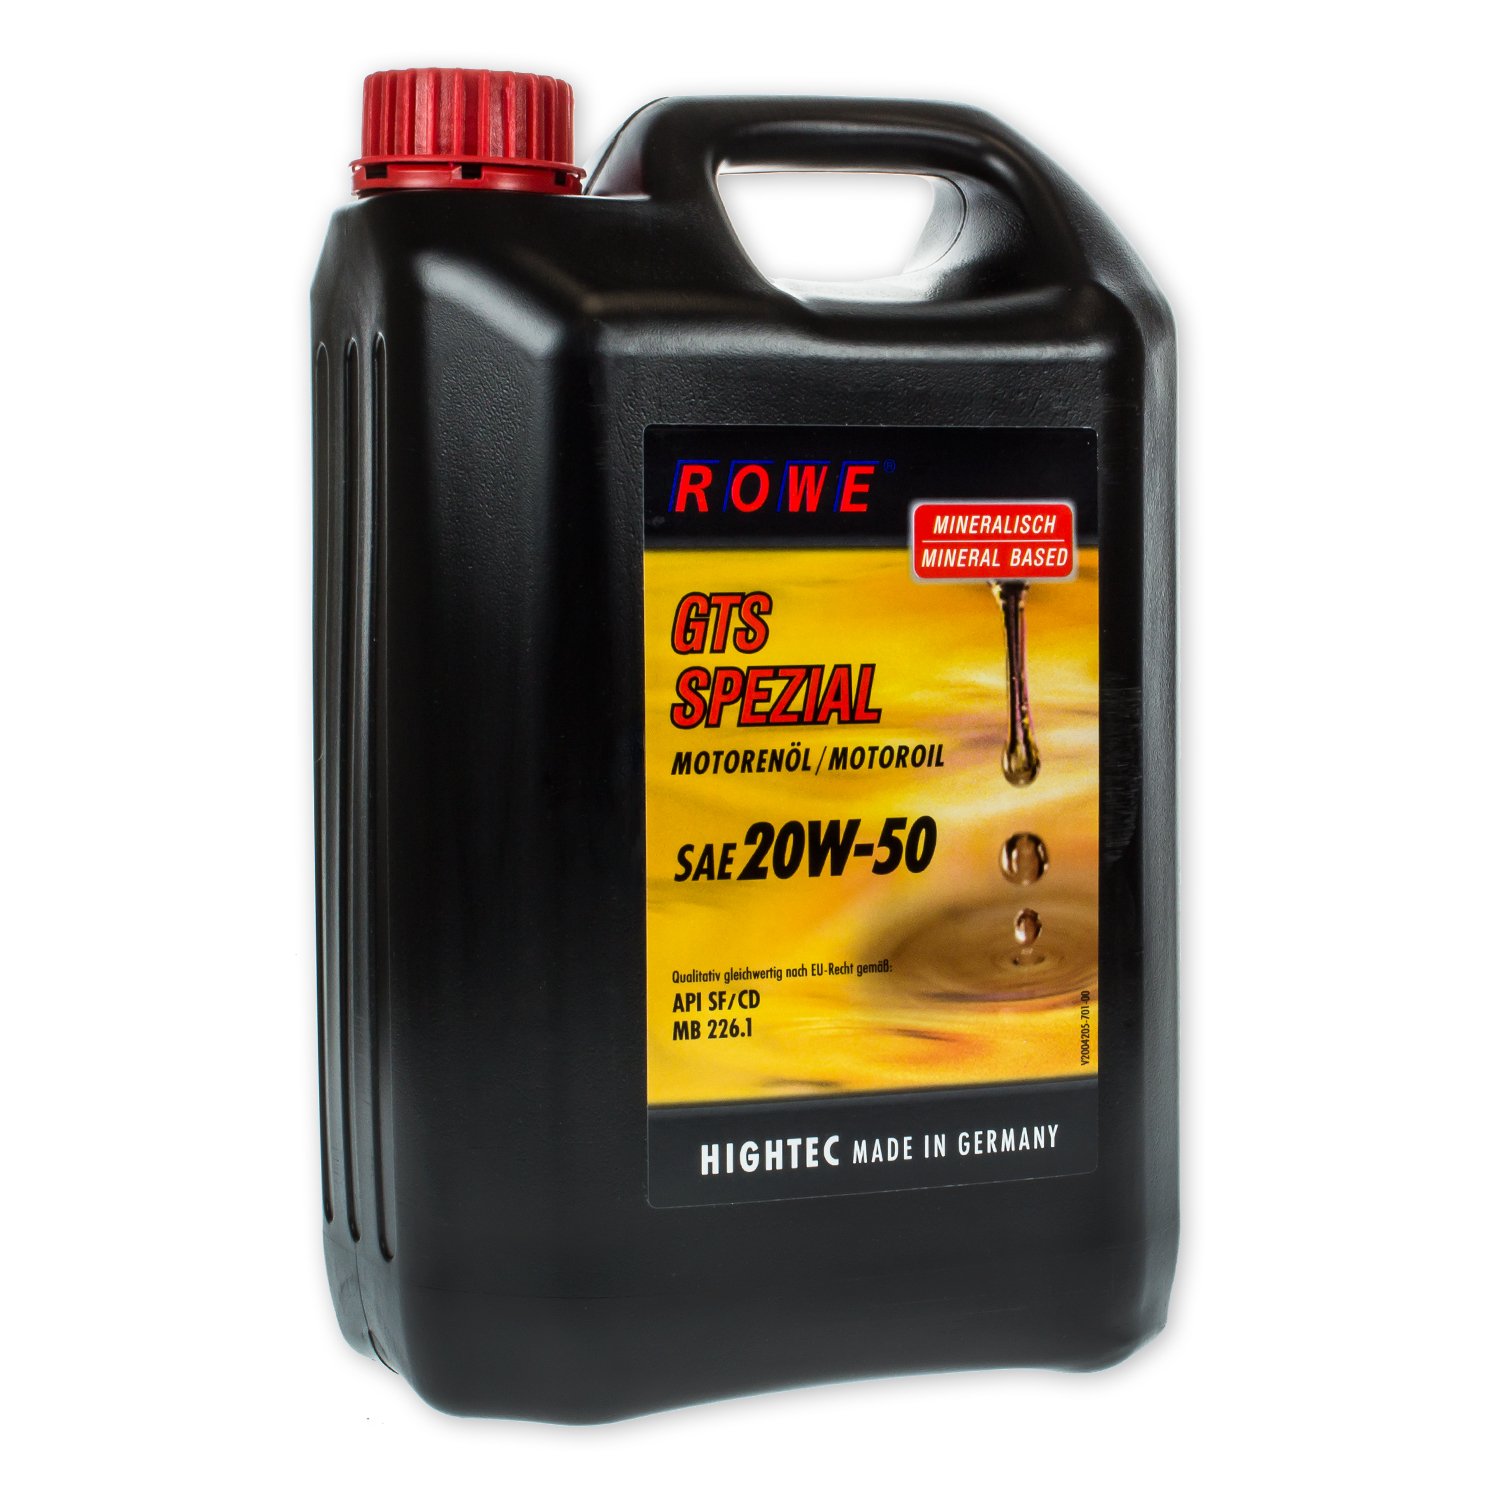 ROWE HIGHTEC GTS SPEZIAL SAE 20W-50, 5 Liter von ROWE